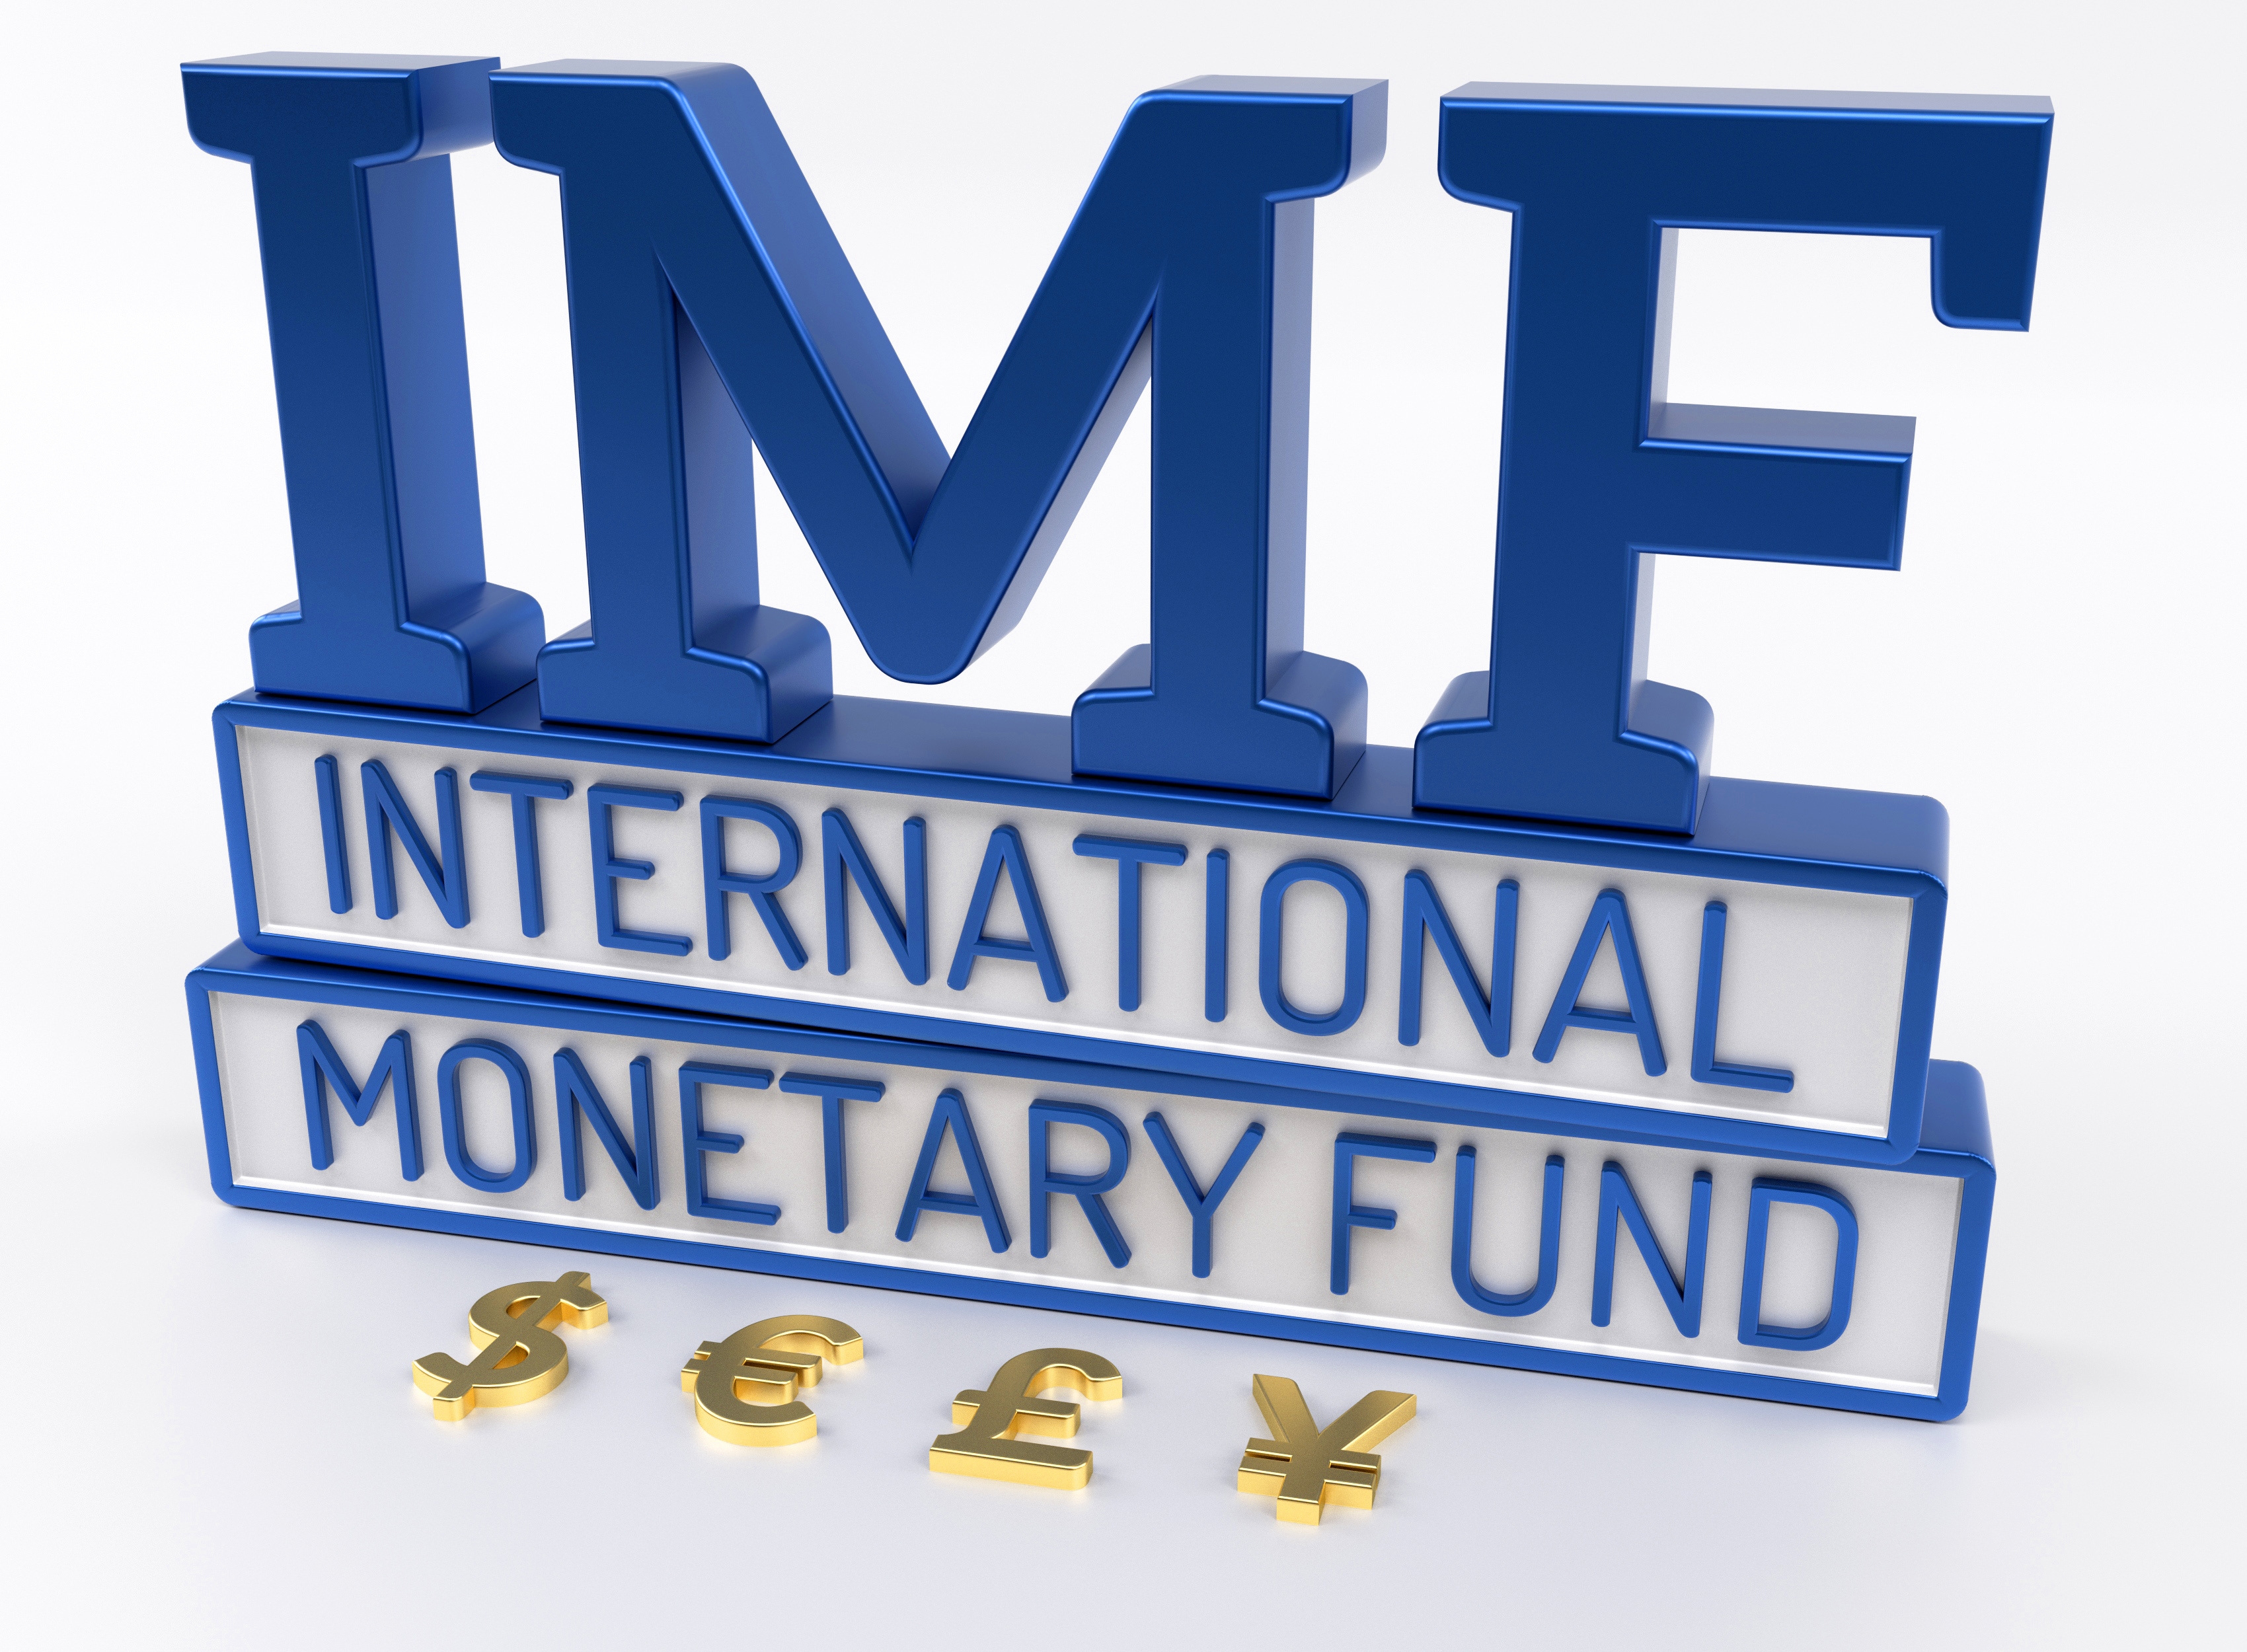 Всемирный валютный фонд. МВФ логотип. International monetary Fund (IMF). Международный валютный фонд лого. Мировой валютный фонд эмблема.